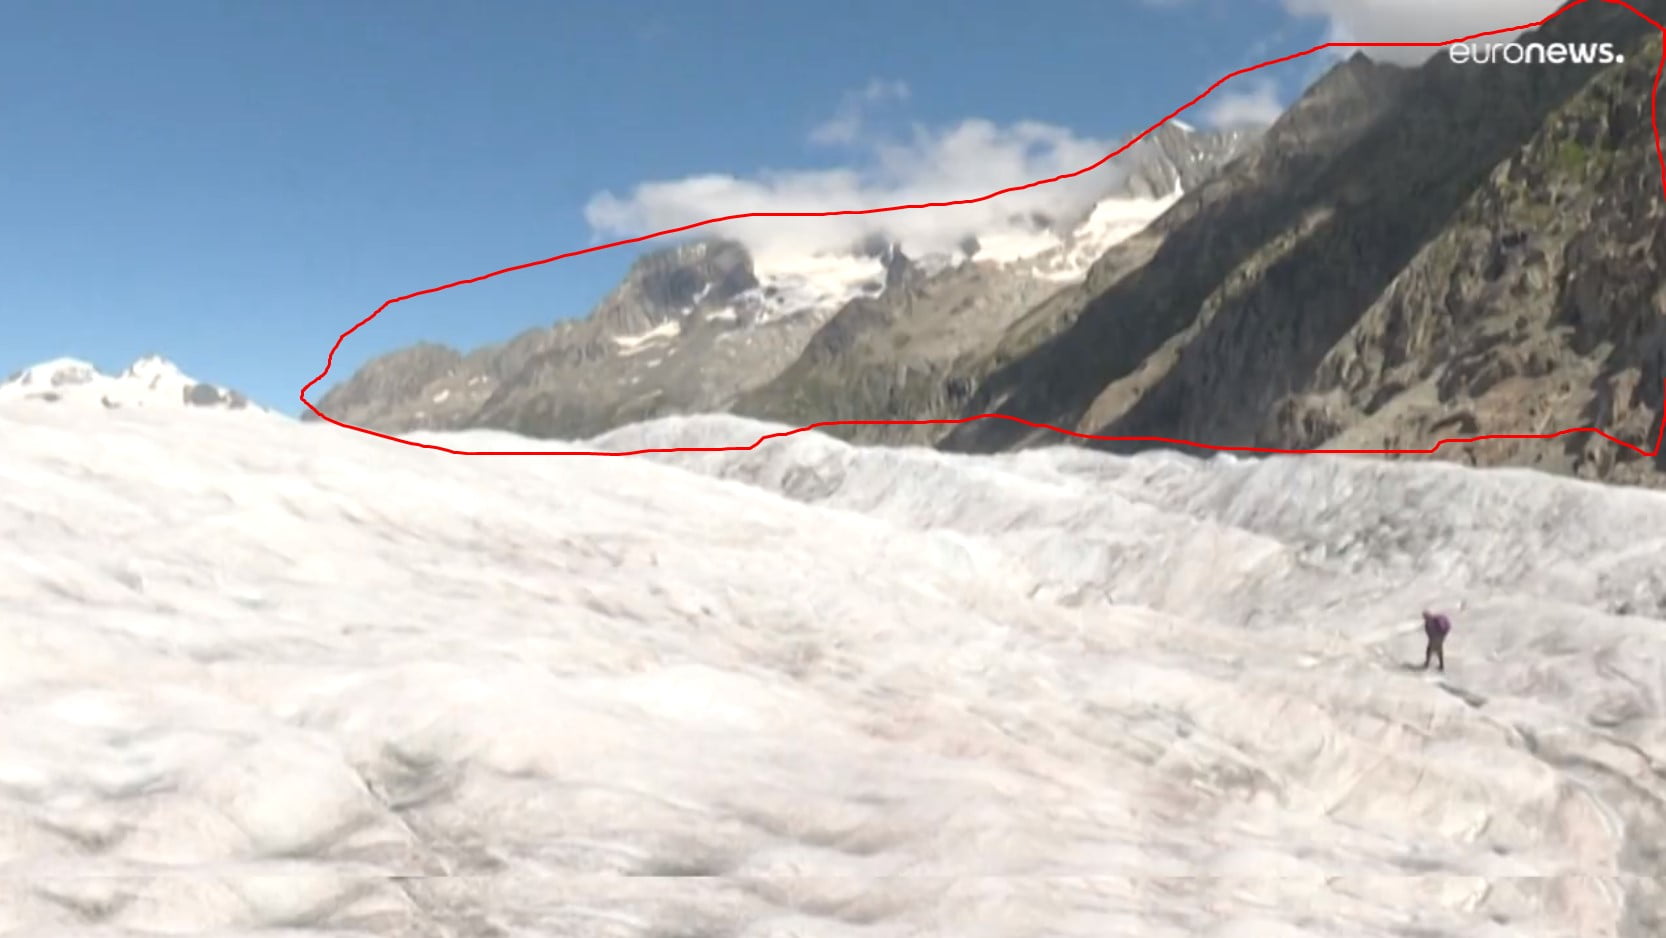 Situação "dramática" nas geleiras da Suiça